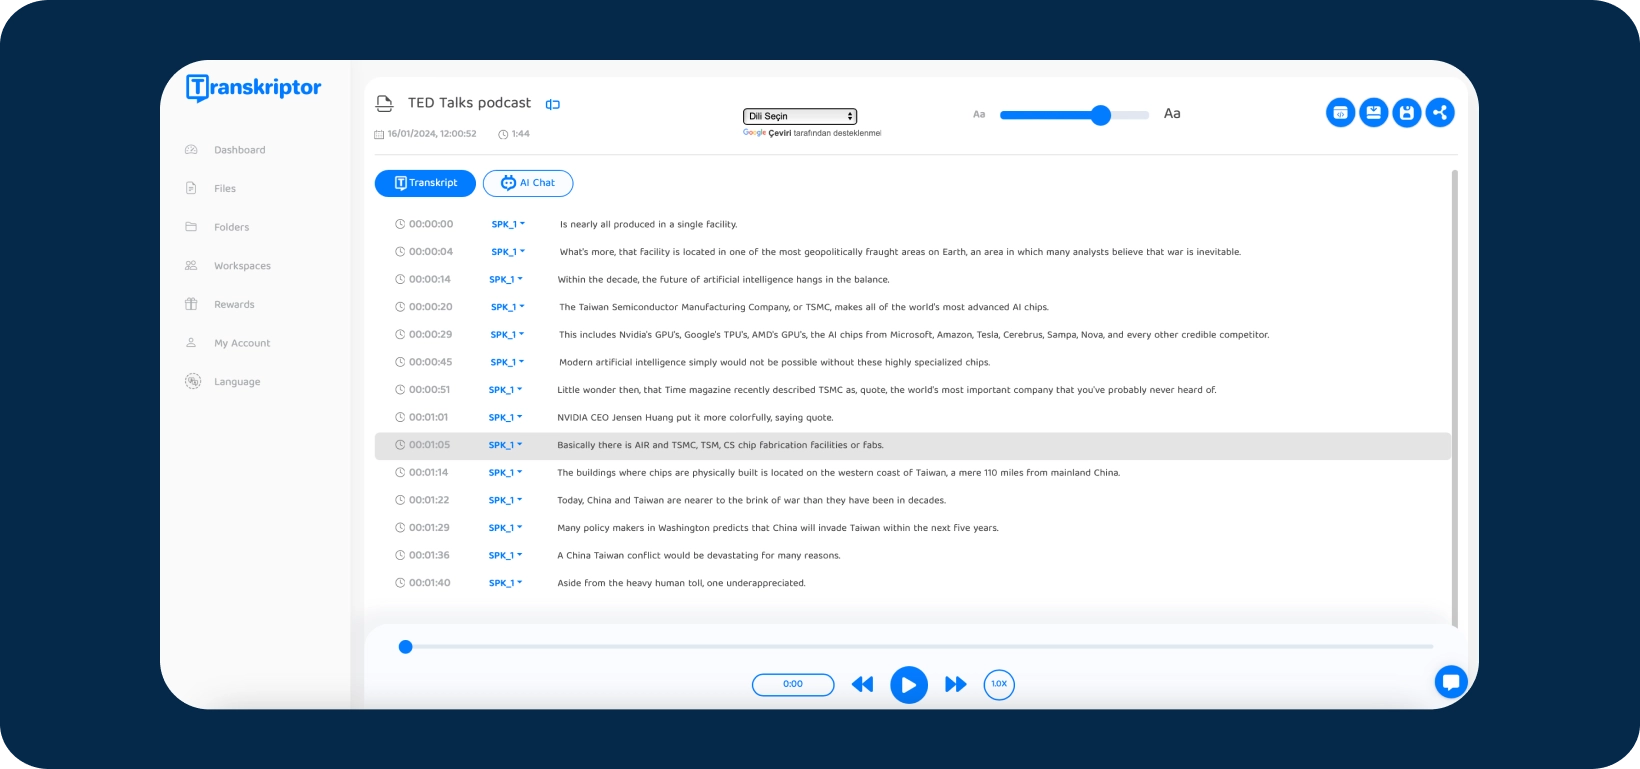 Captura de tela da interface Transkriptor aplicativo mostrando um podcast TED Talks sendo transcrito.